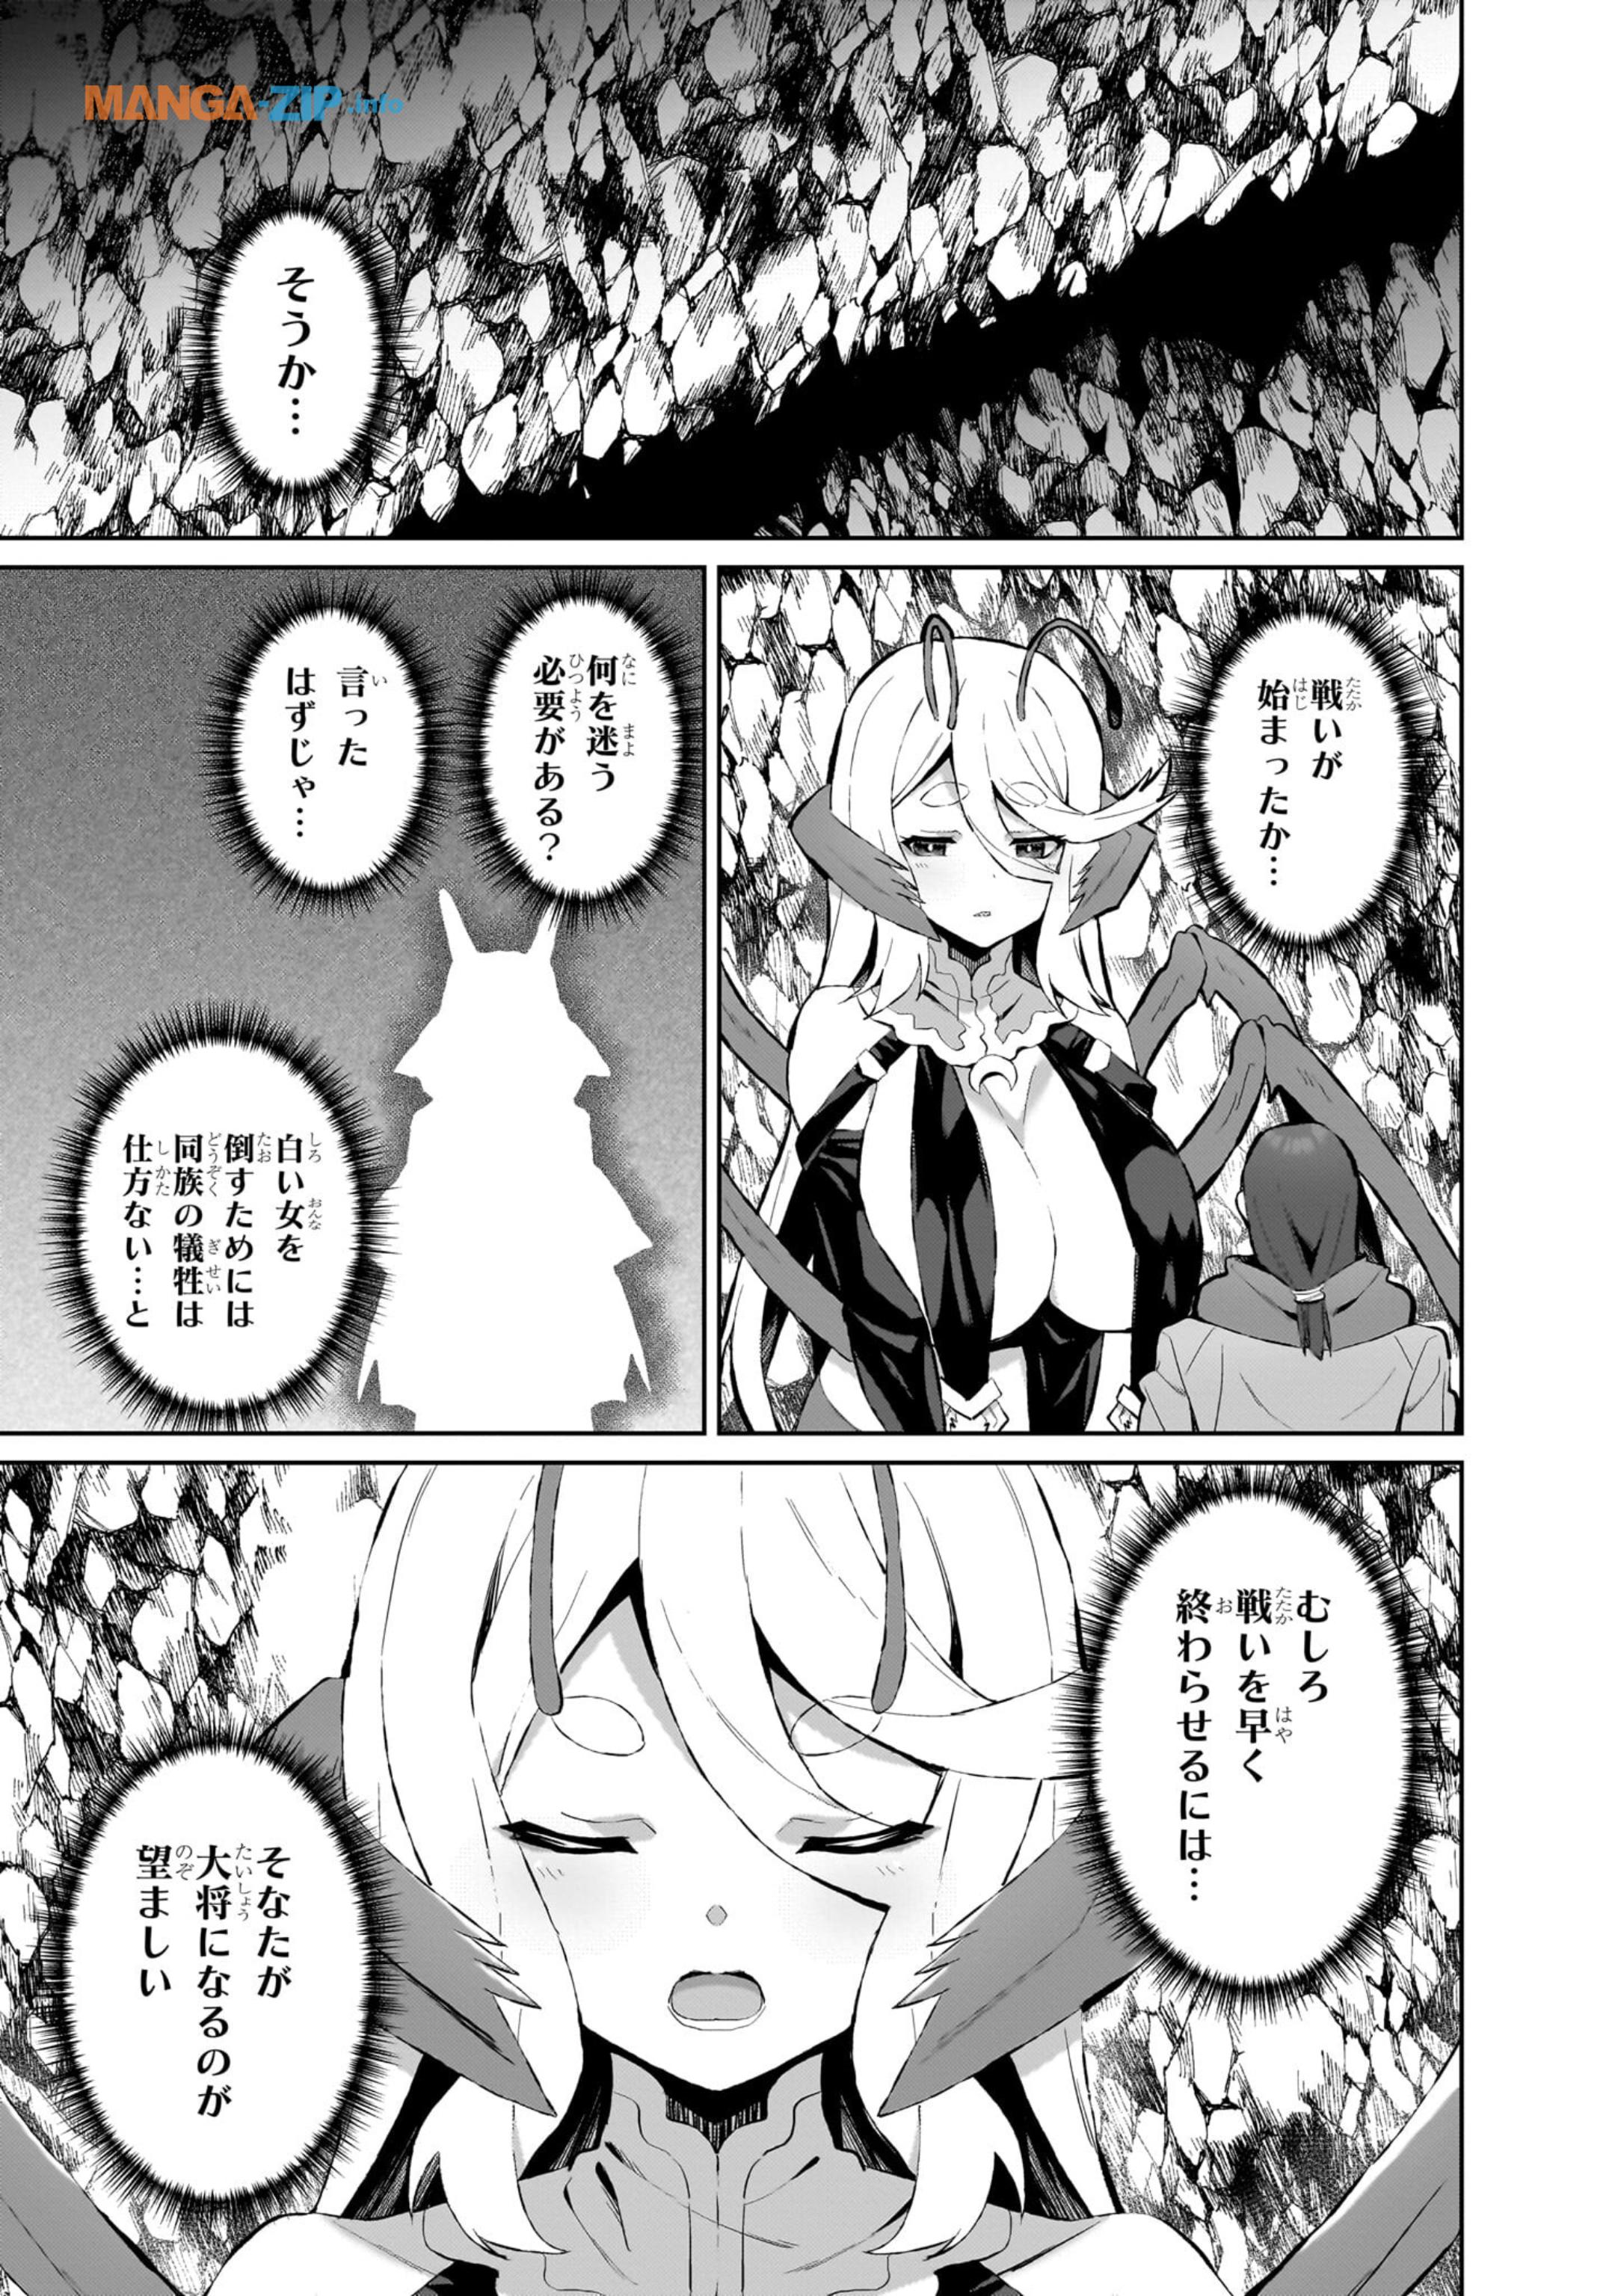 Nogaku Hakase no Isekai Muso Kinki no Chishiki de Kizuku Monster Musume Harem - Chapter 7 - Page 13